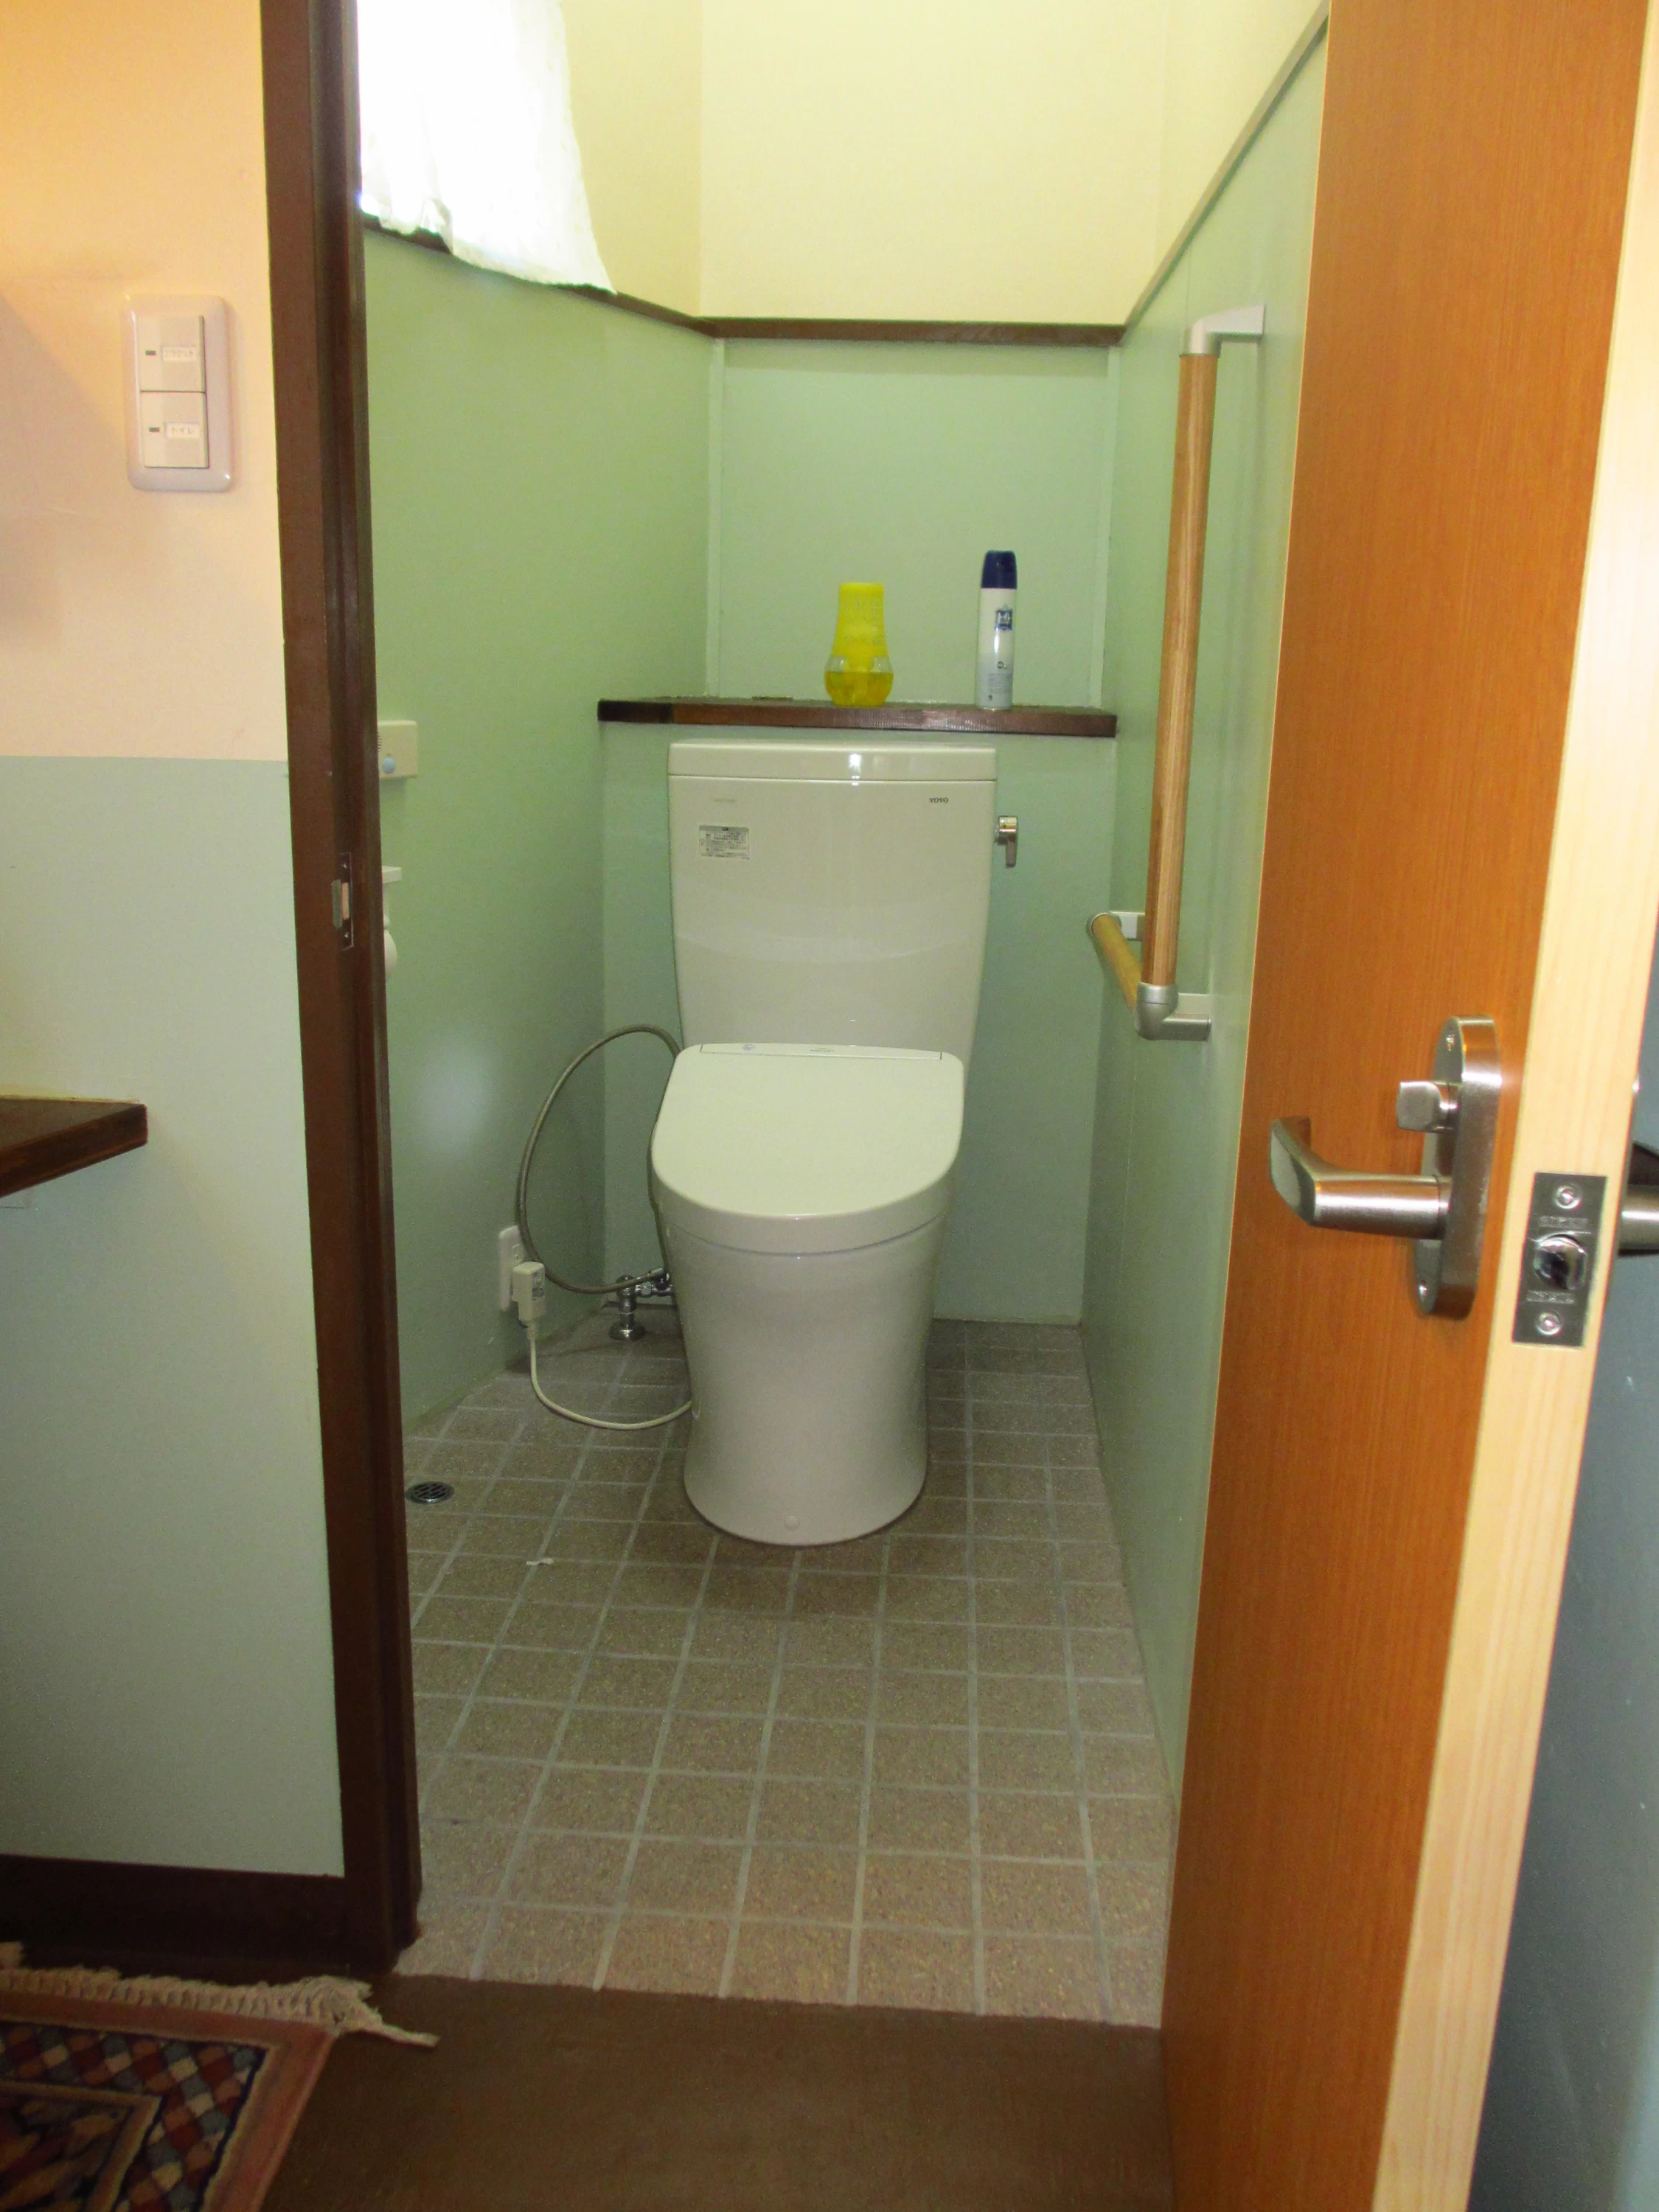 トイレ入口幅60㎝、段差なし。右側にL字手すりあり、温水洗浄便座あり。